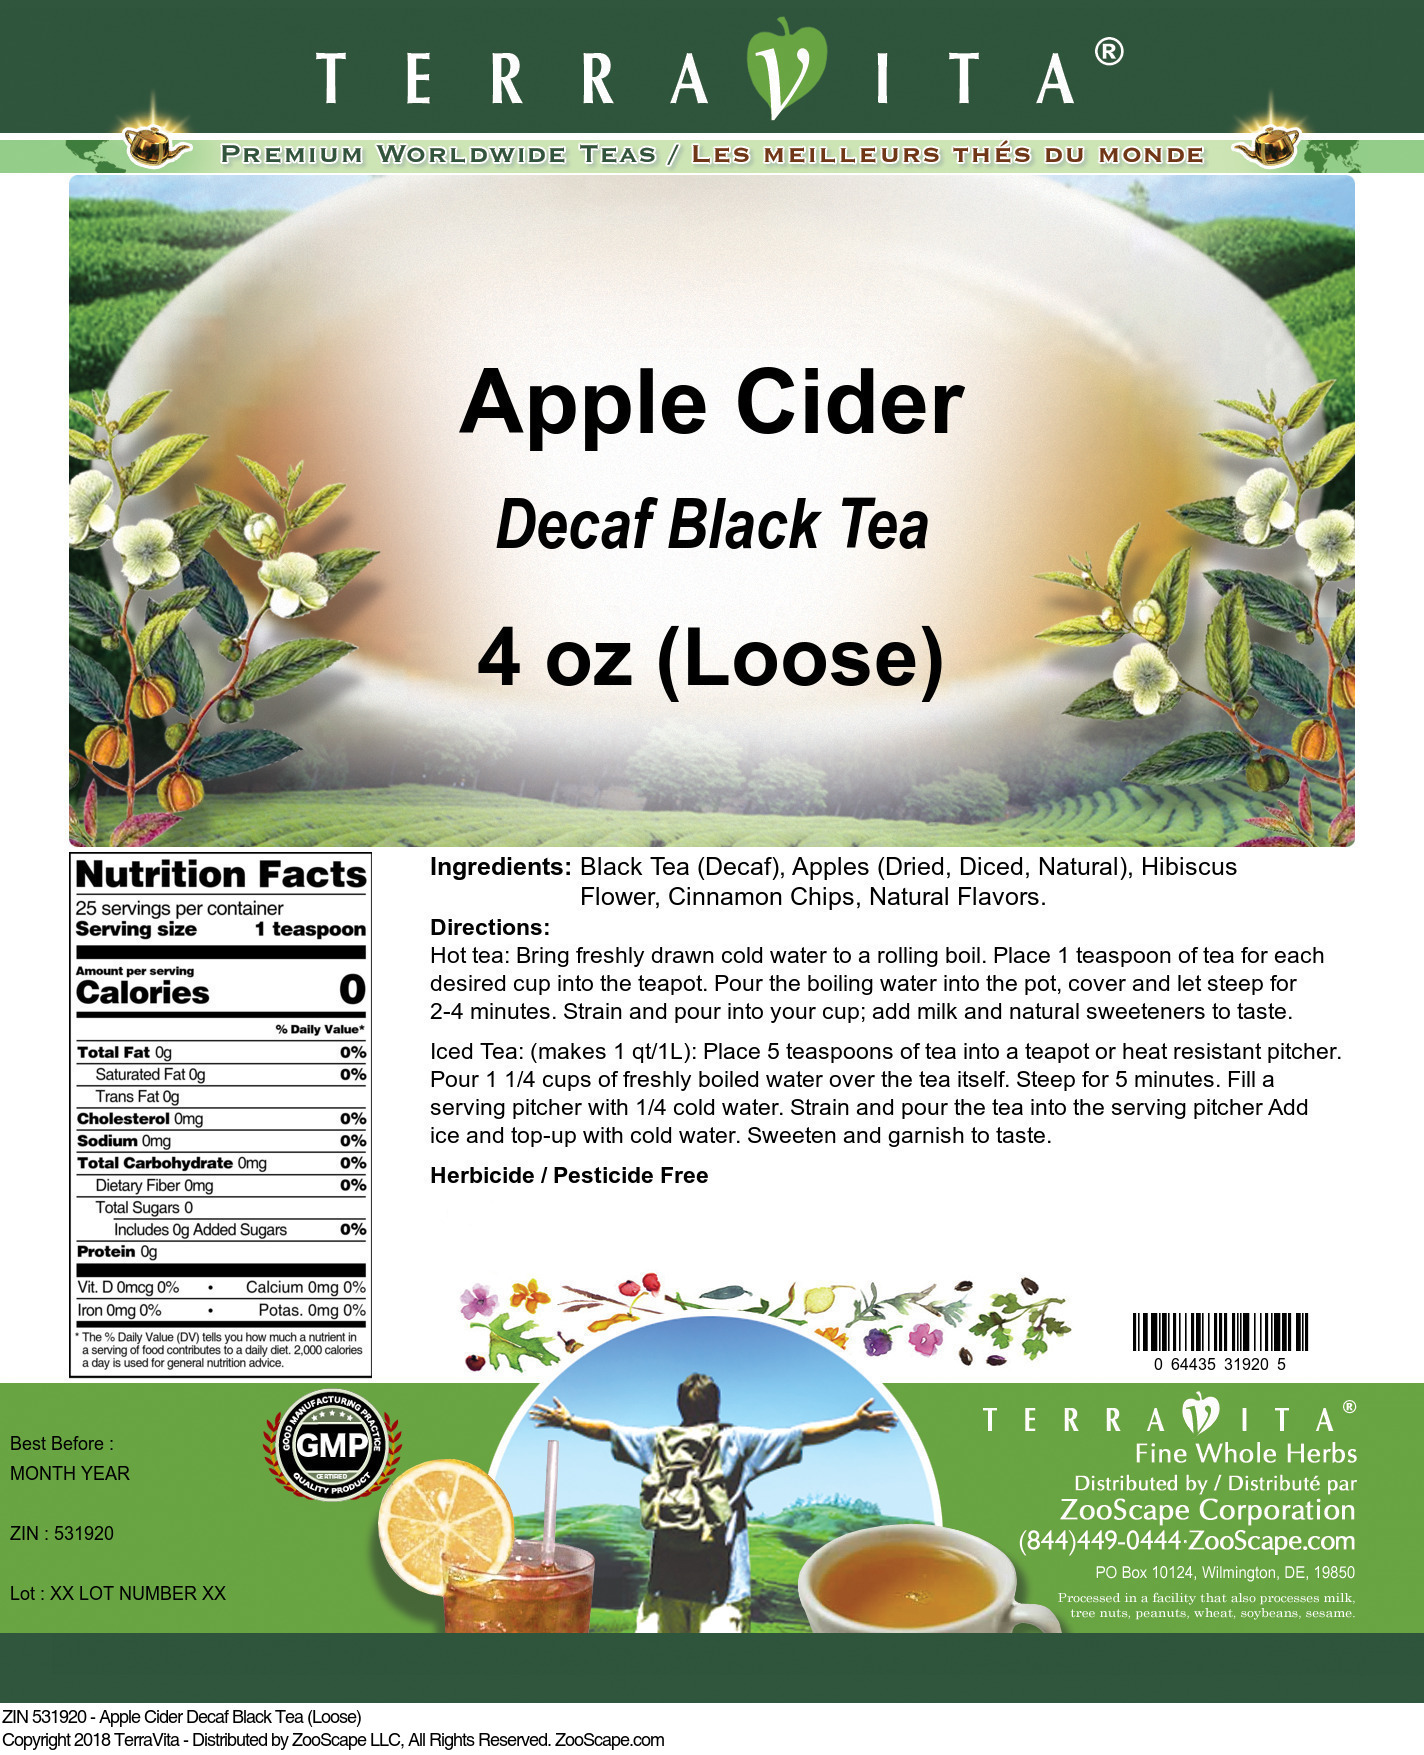 Apple Cider Decaf Black Tea (Loose) - Label